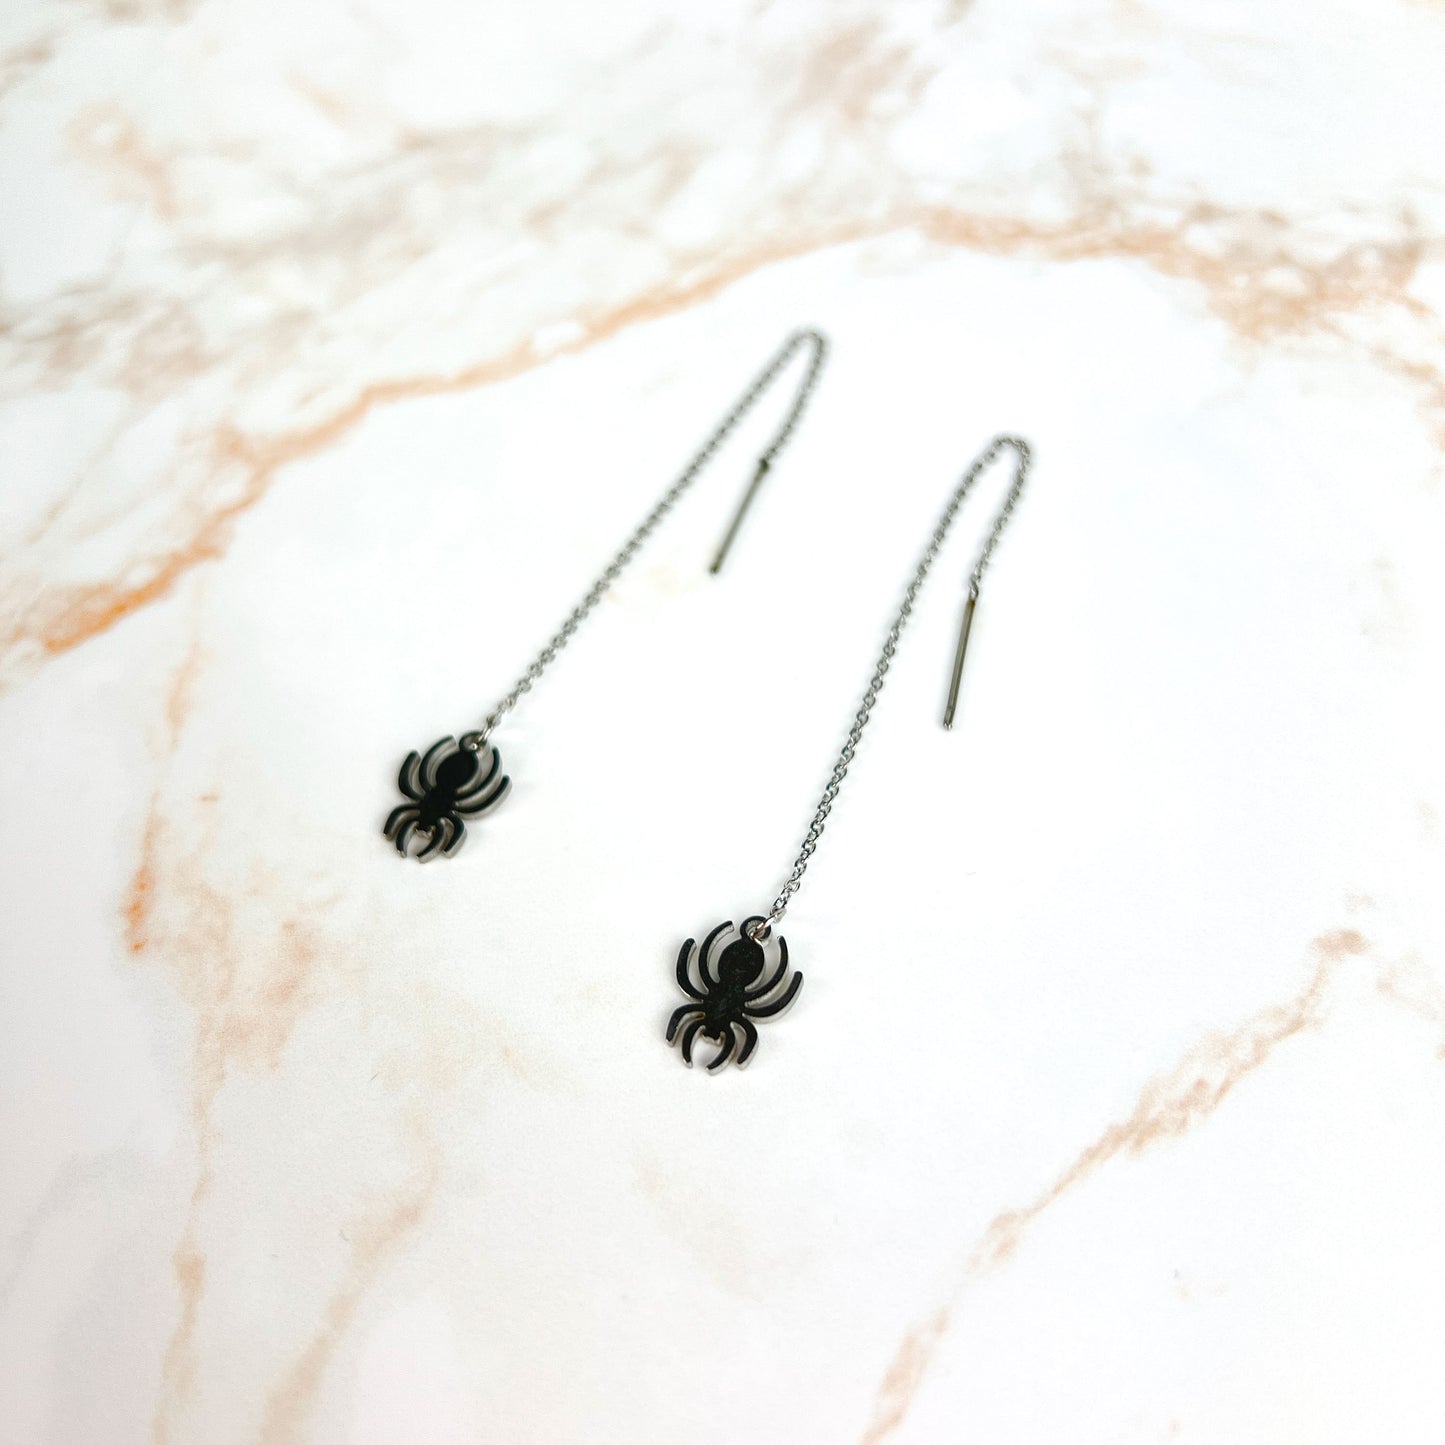 Spider threader stainless steel earrings